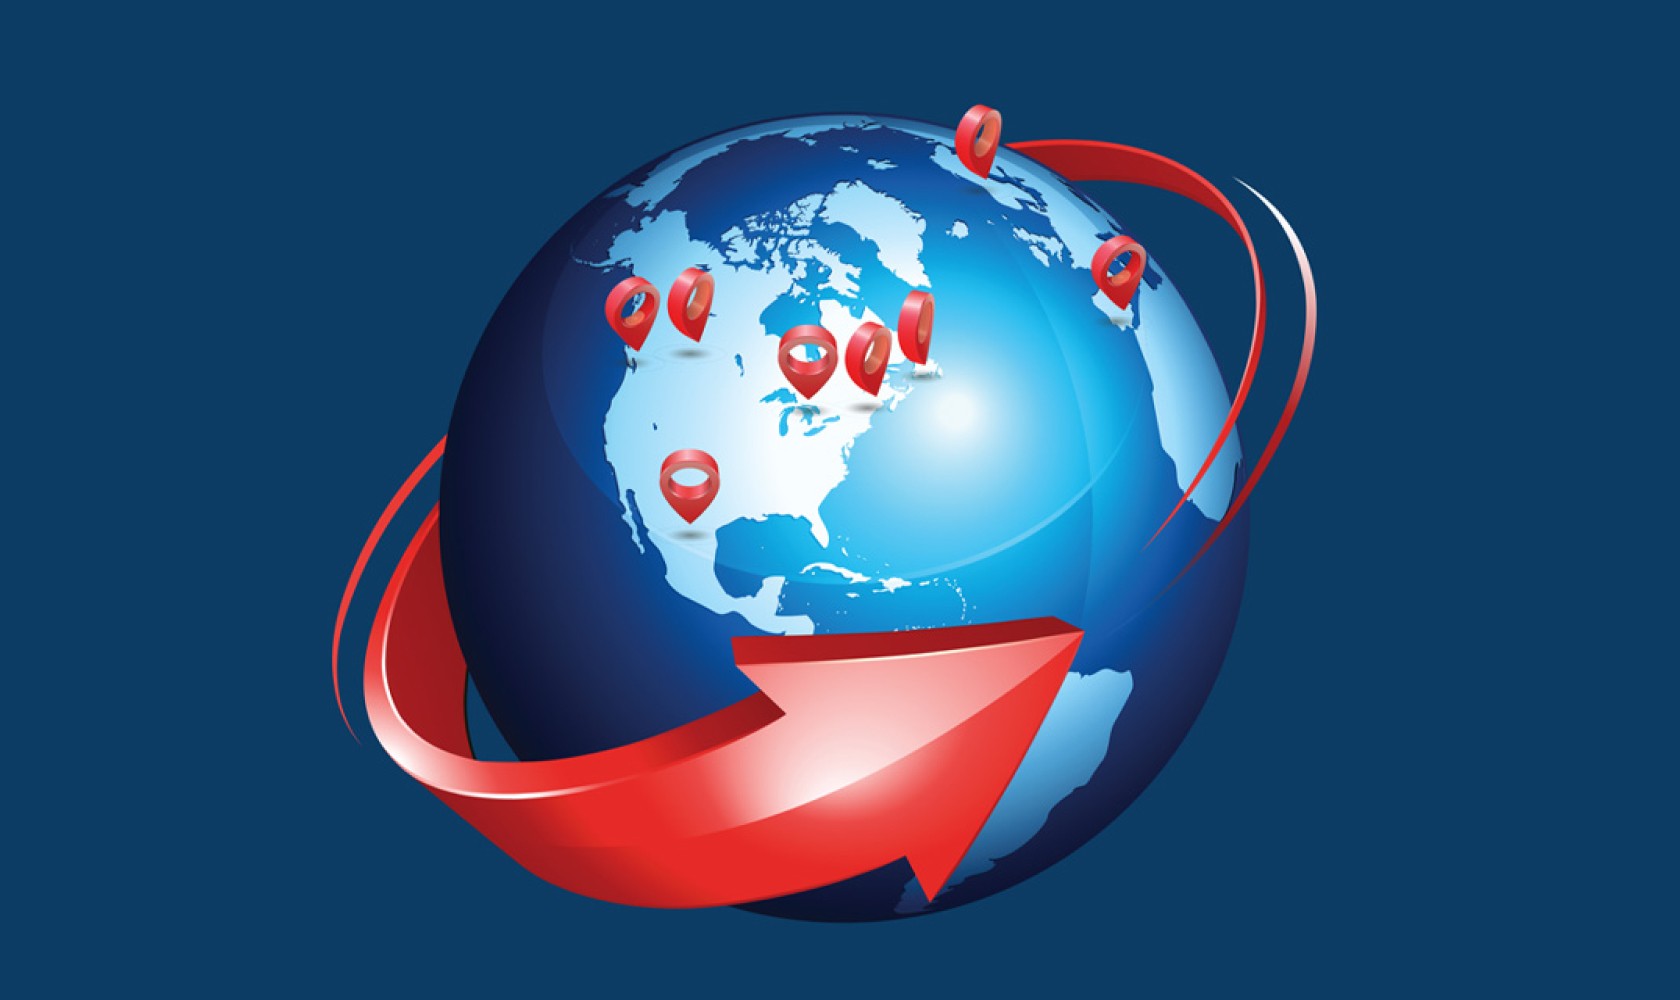 Une flèche rouge fait le tour du globe. Des punaises rouges indiquent des emplacements dans le monde, illustrant la portée de MoneyGram